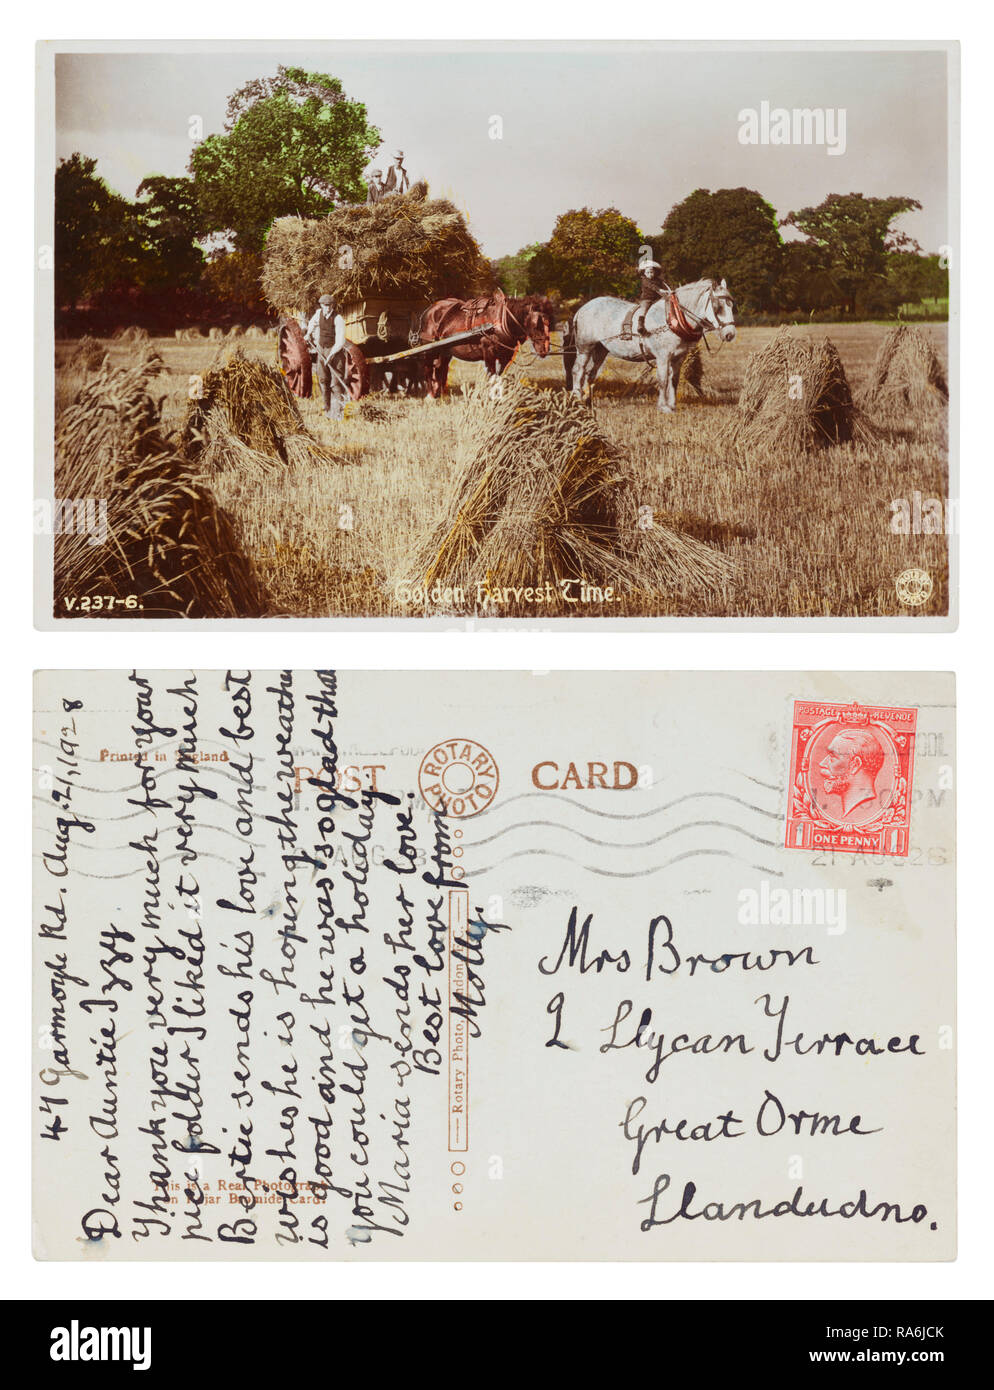 Postkarte gesendet von Molly am 47 Garmoyle Road, Liverpool zu ihrer Tante Izzy Braun am 2 Llycan Terrasse, Great Orme, Llandudno, Wales im August 1928 Stockfoto